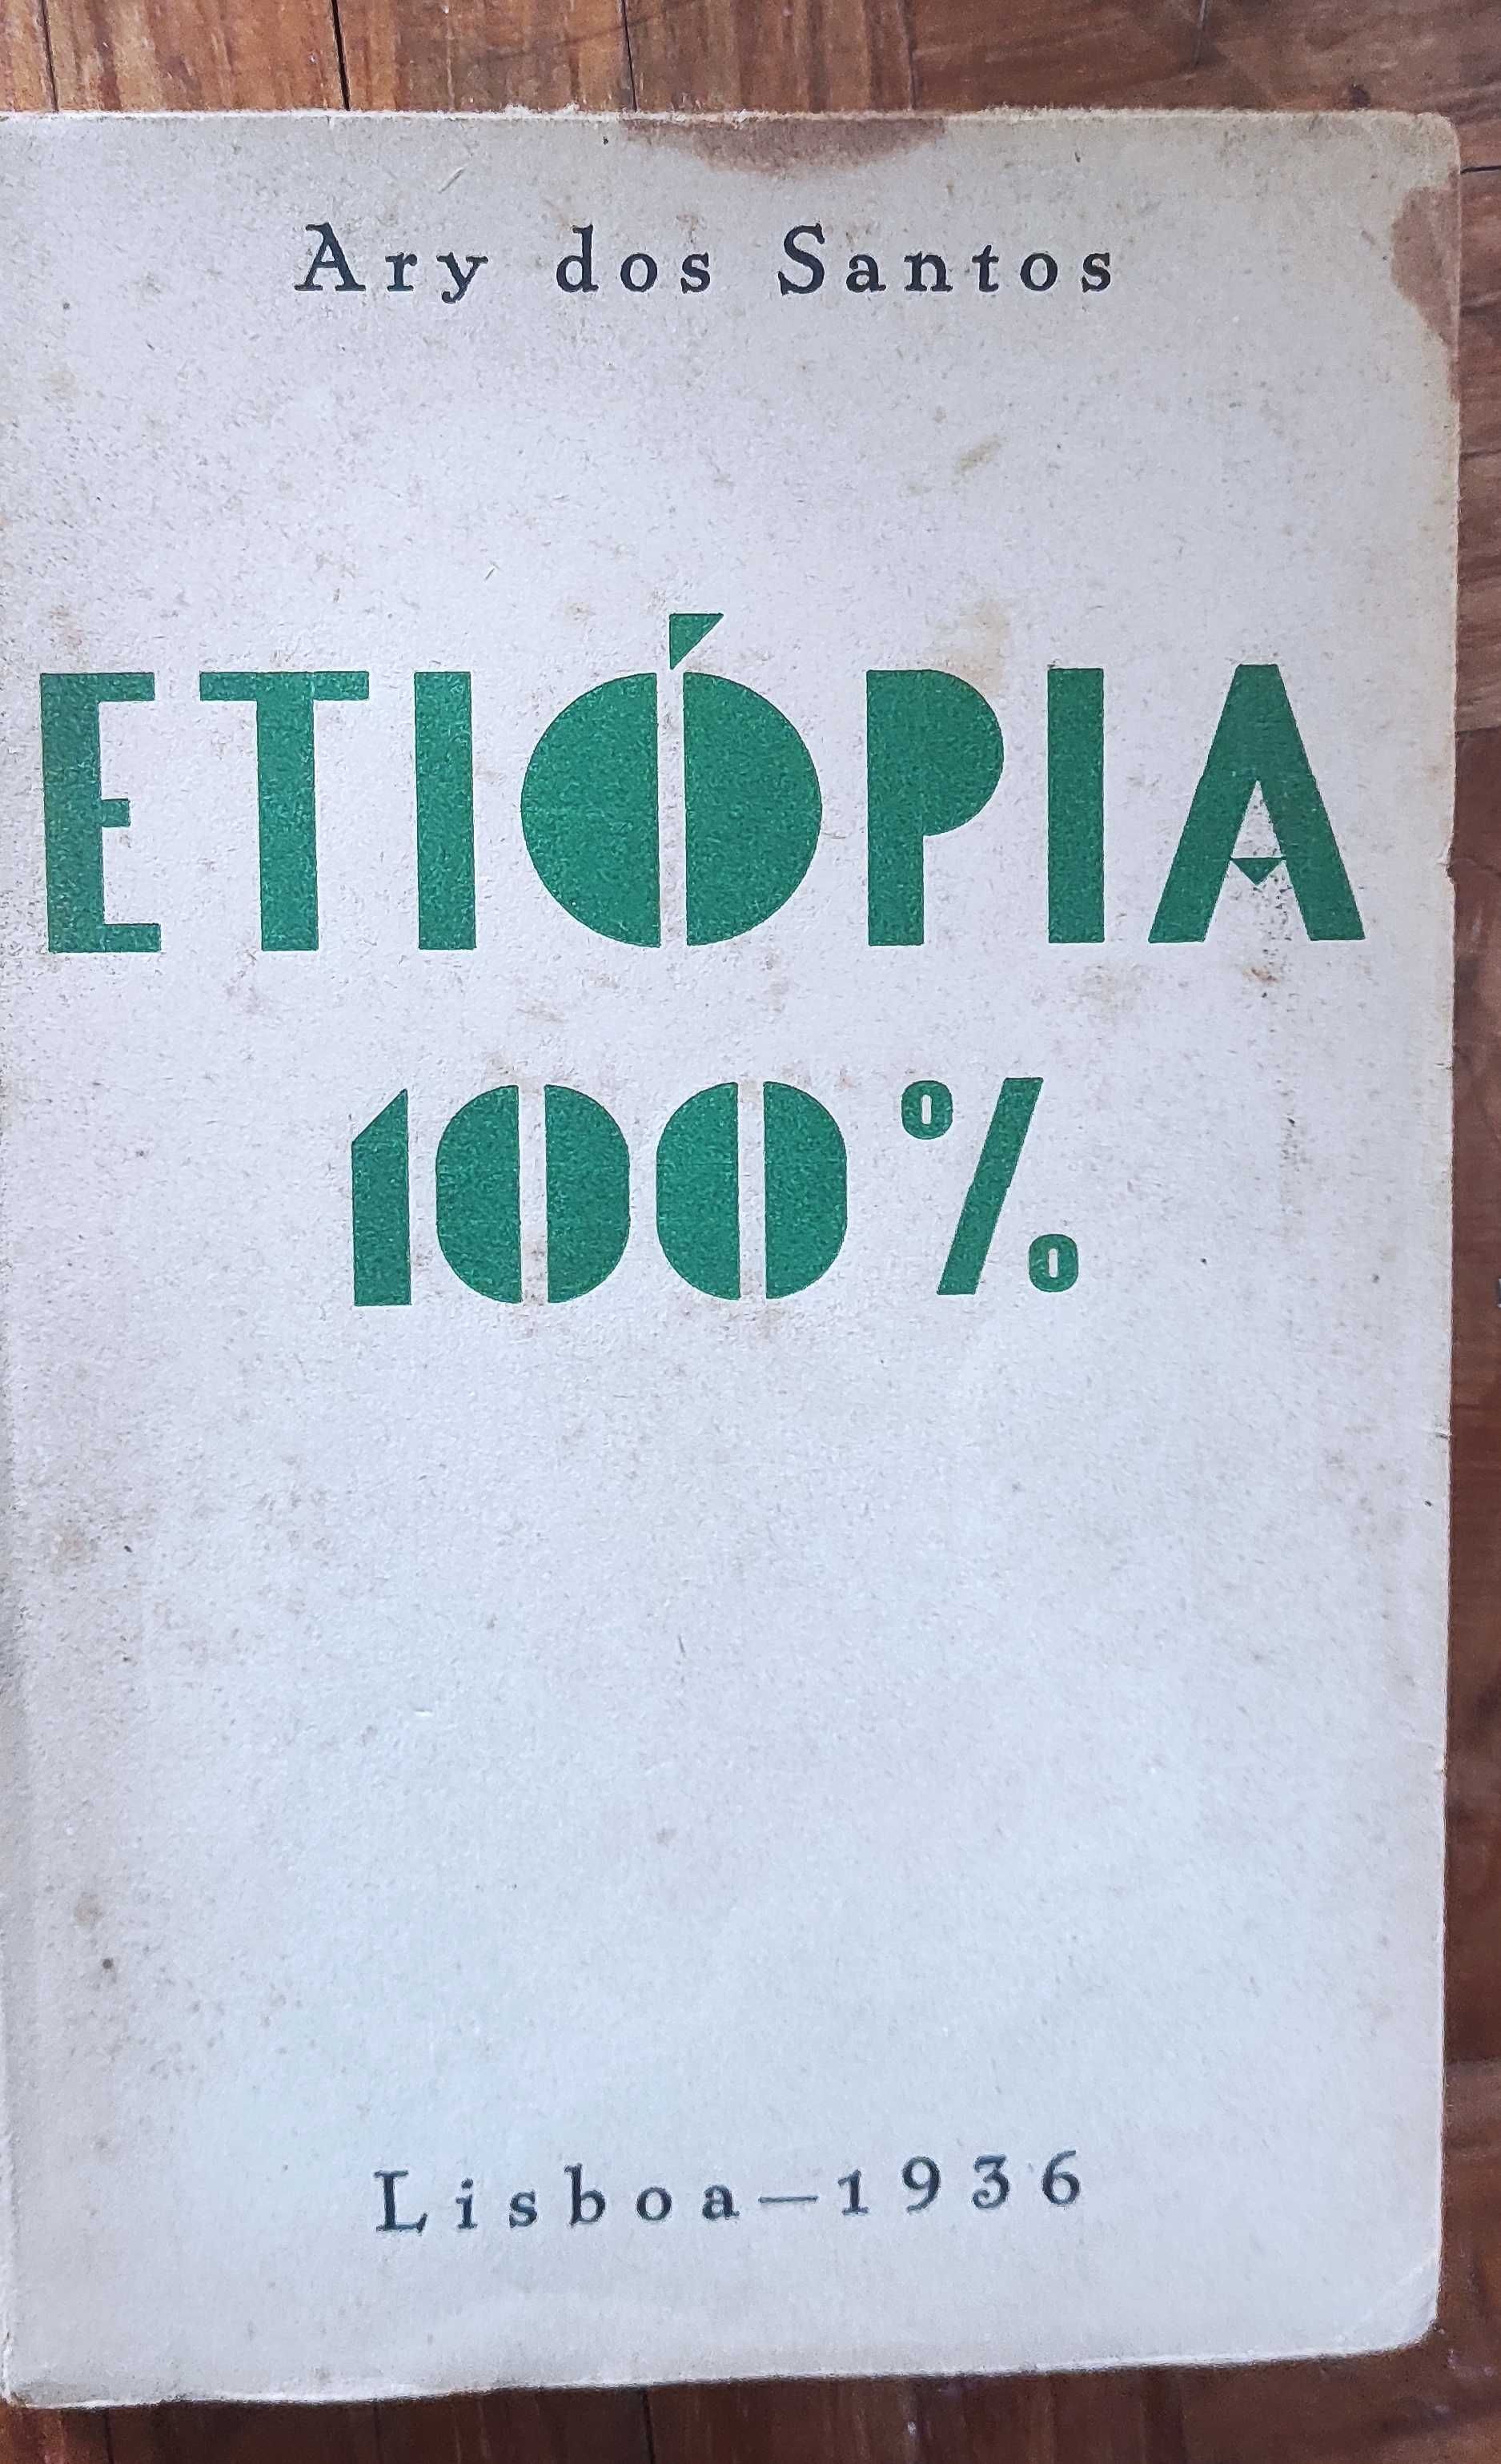 Etiópia 100%
De: Ary dos Santos